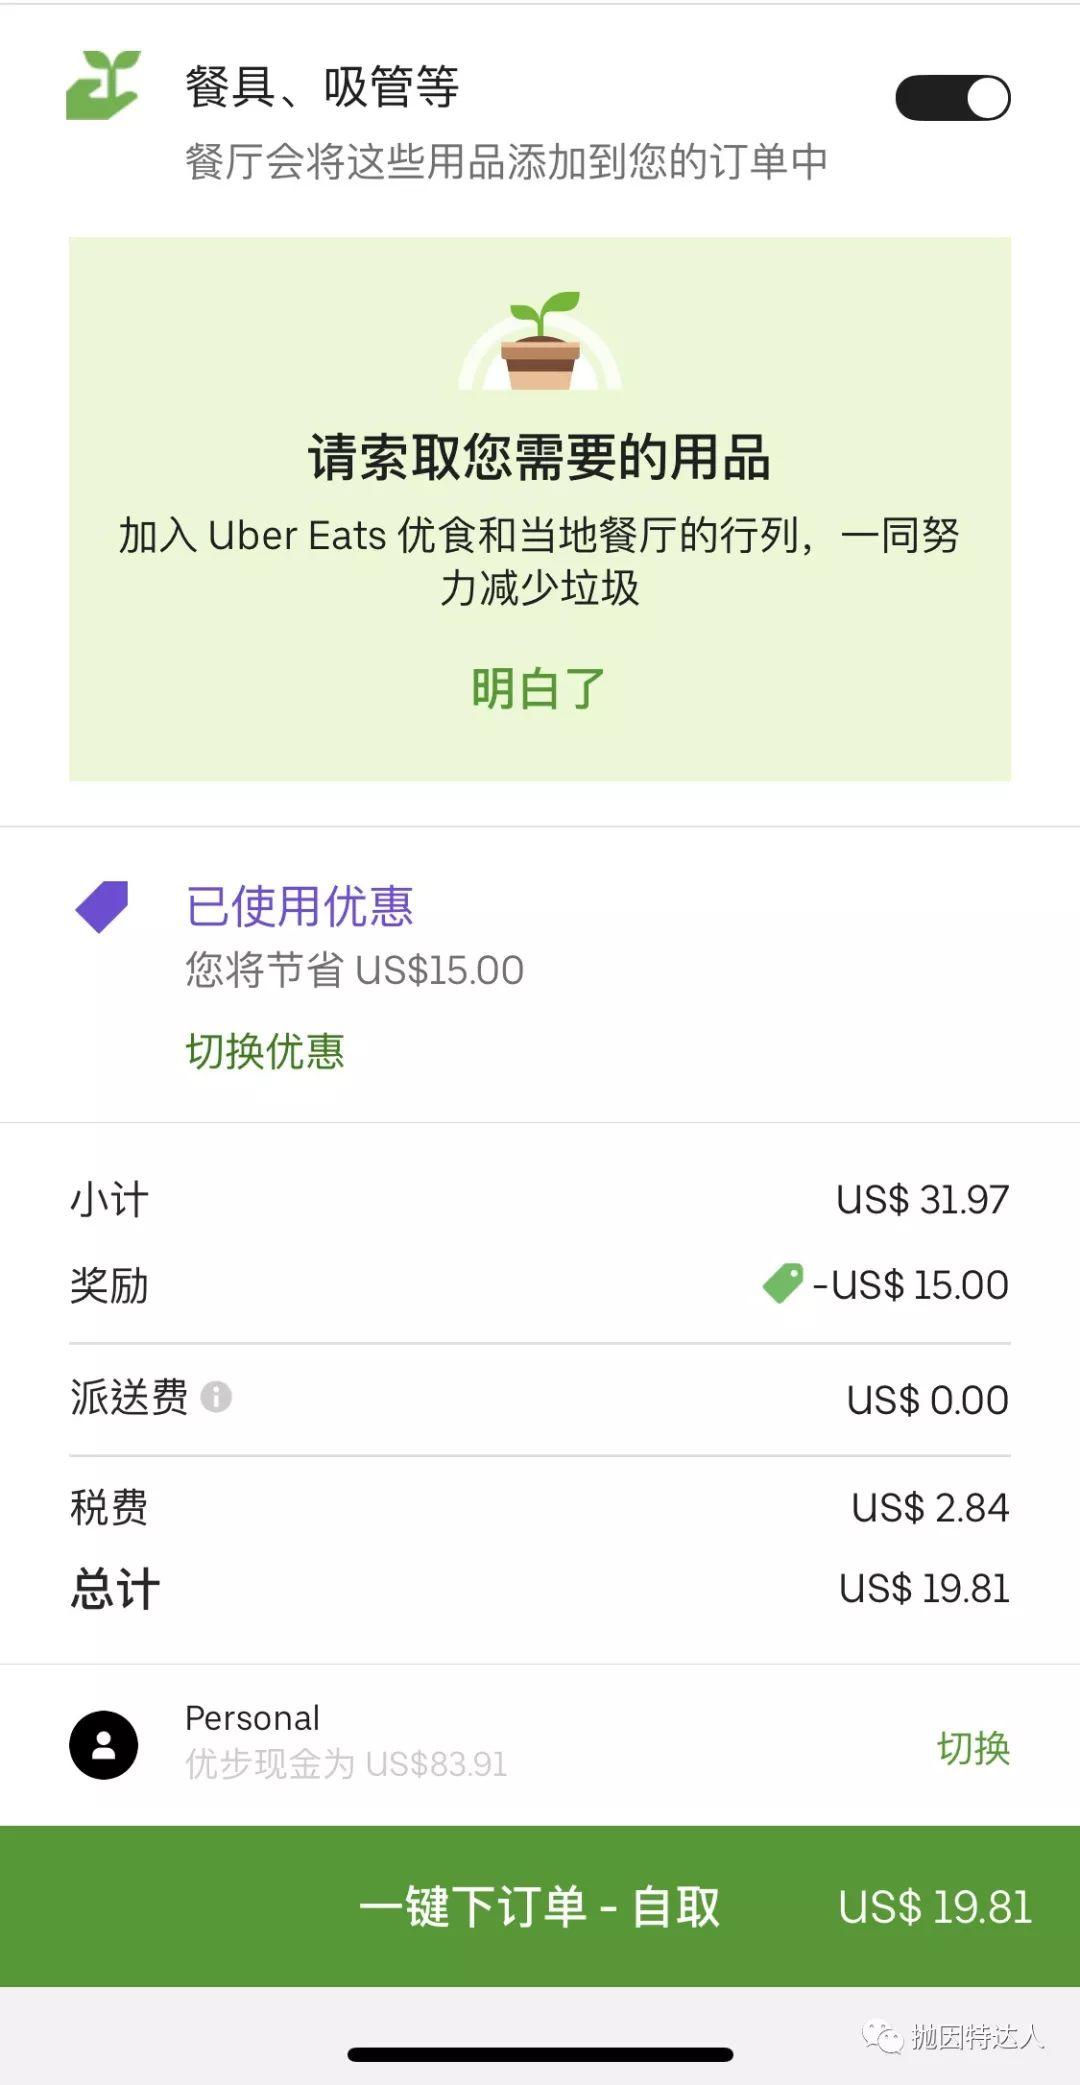 《外卖福利 - Uber Eats五折折扣码来了》